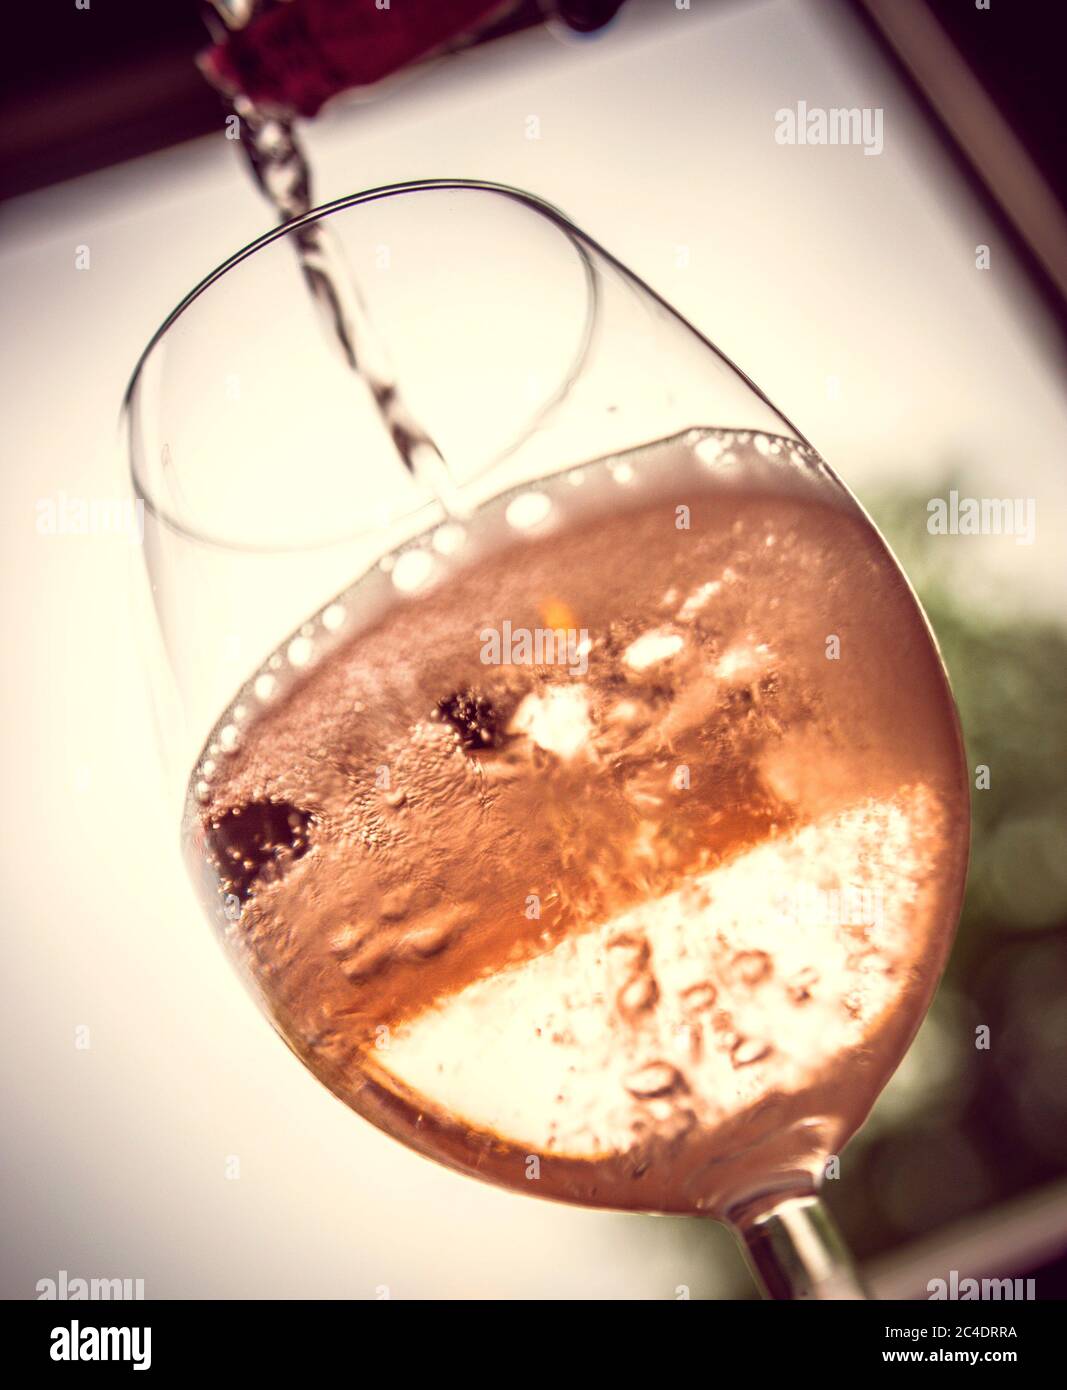 Pour Rosé into Wineglass Stock Photo